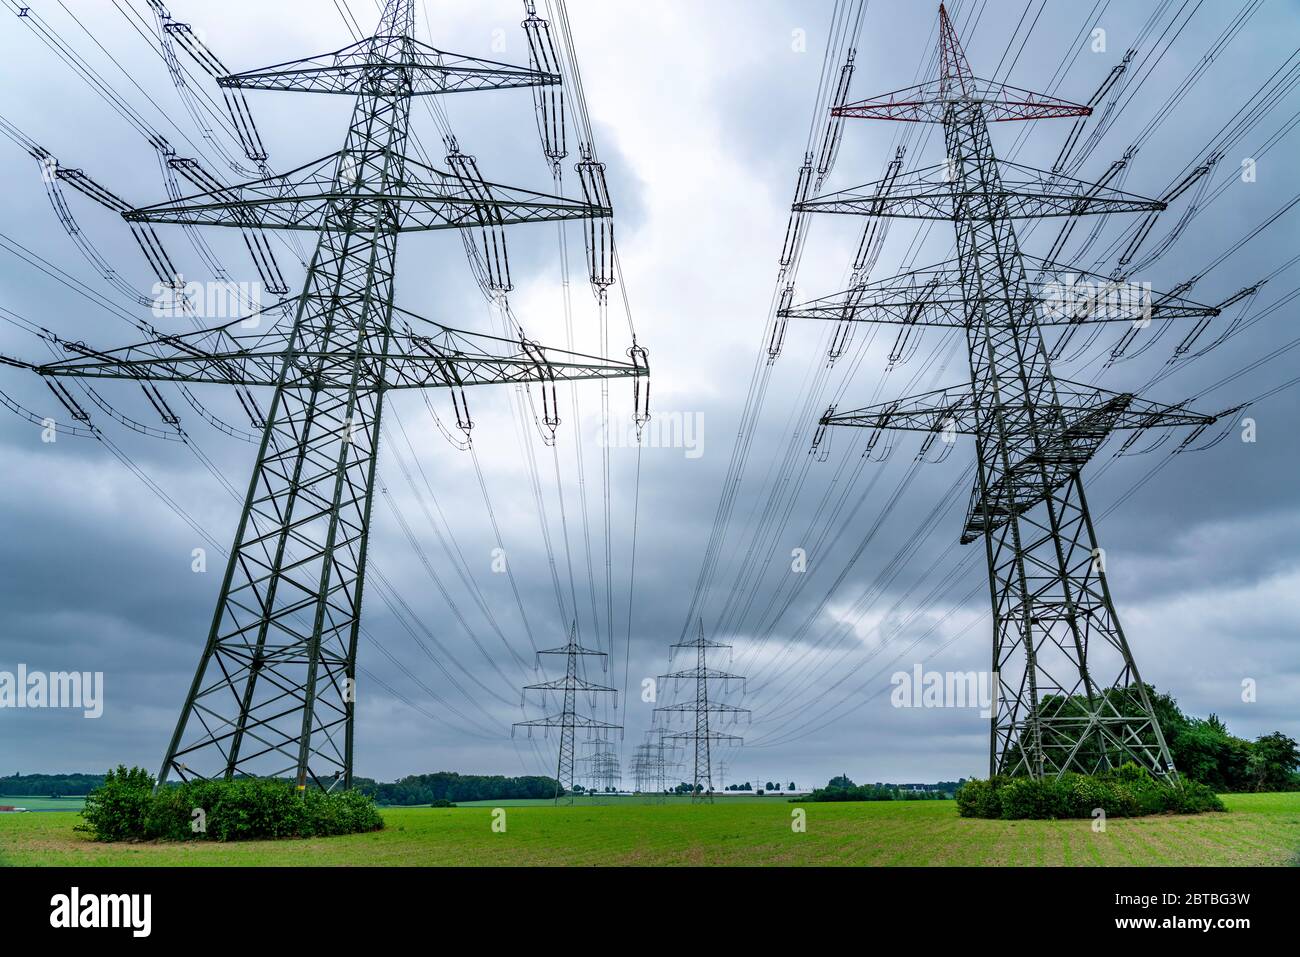 Lignes électriques, réseau électrique à très haute tension, 380 kilovolt, transporte l'électricité produite dans les grandes centrales électriques vers les régions, vers une statio de transformateur Banque D'Images